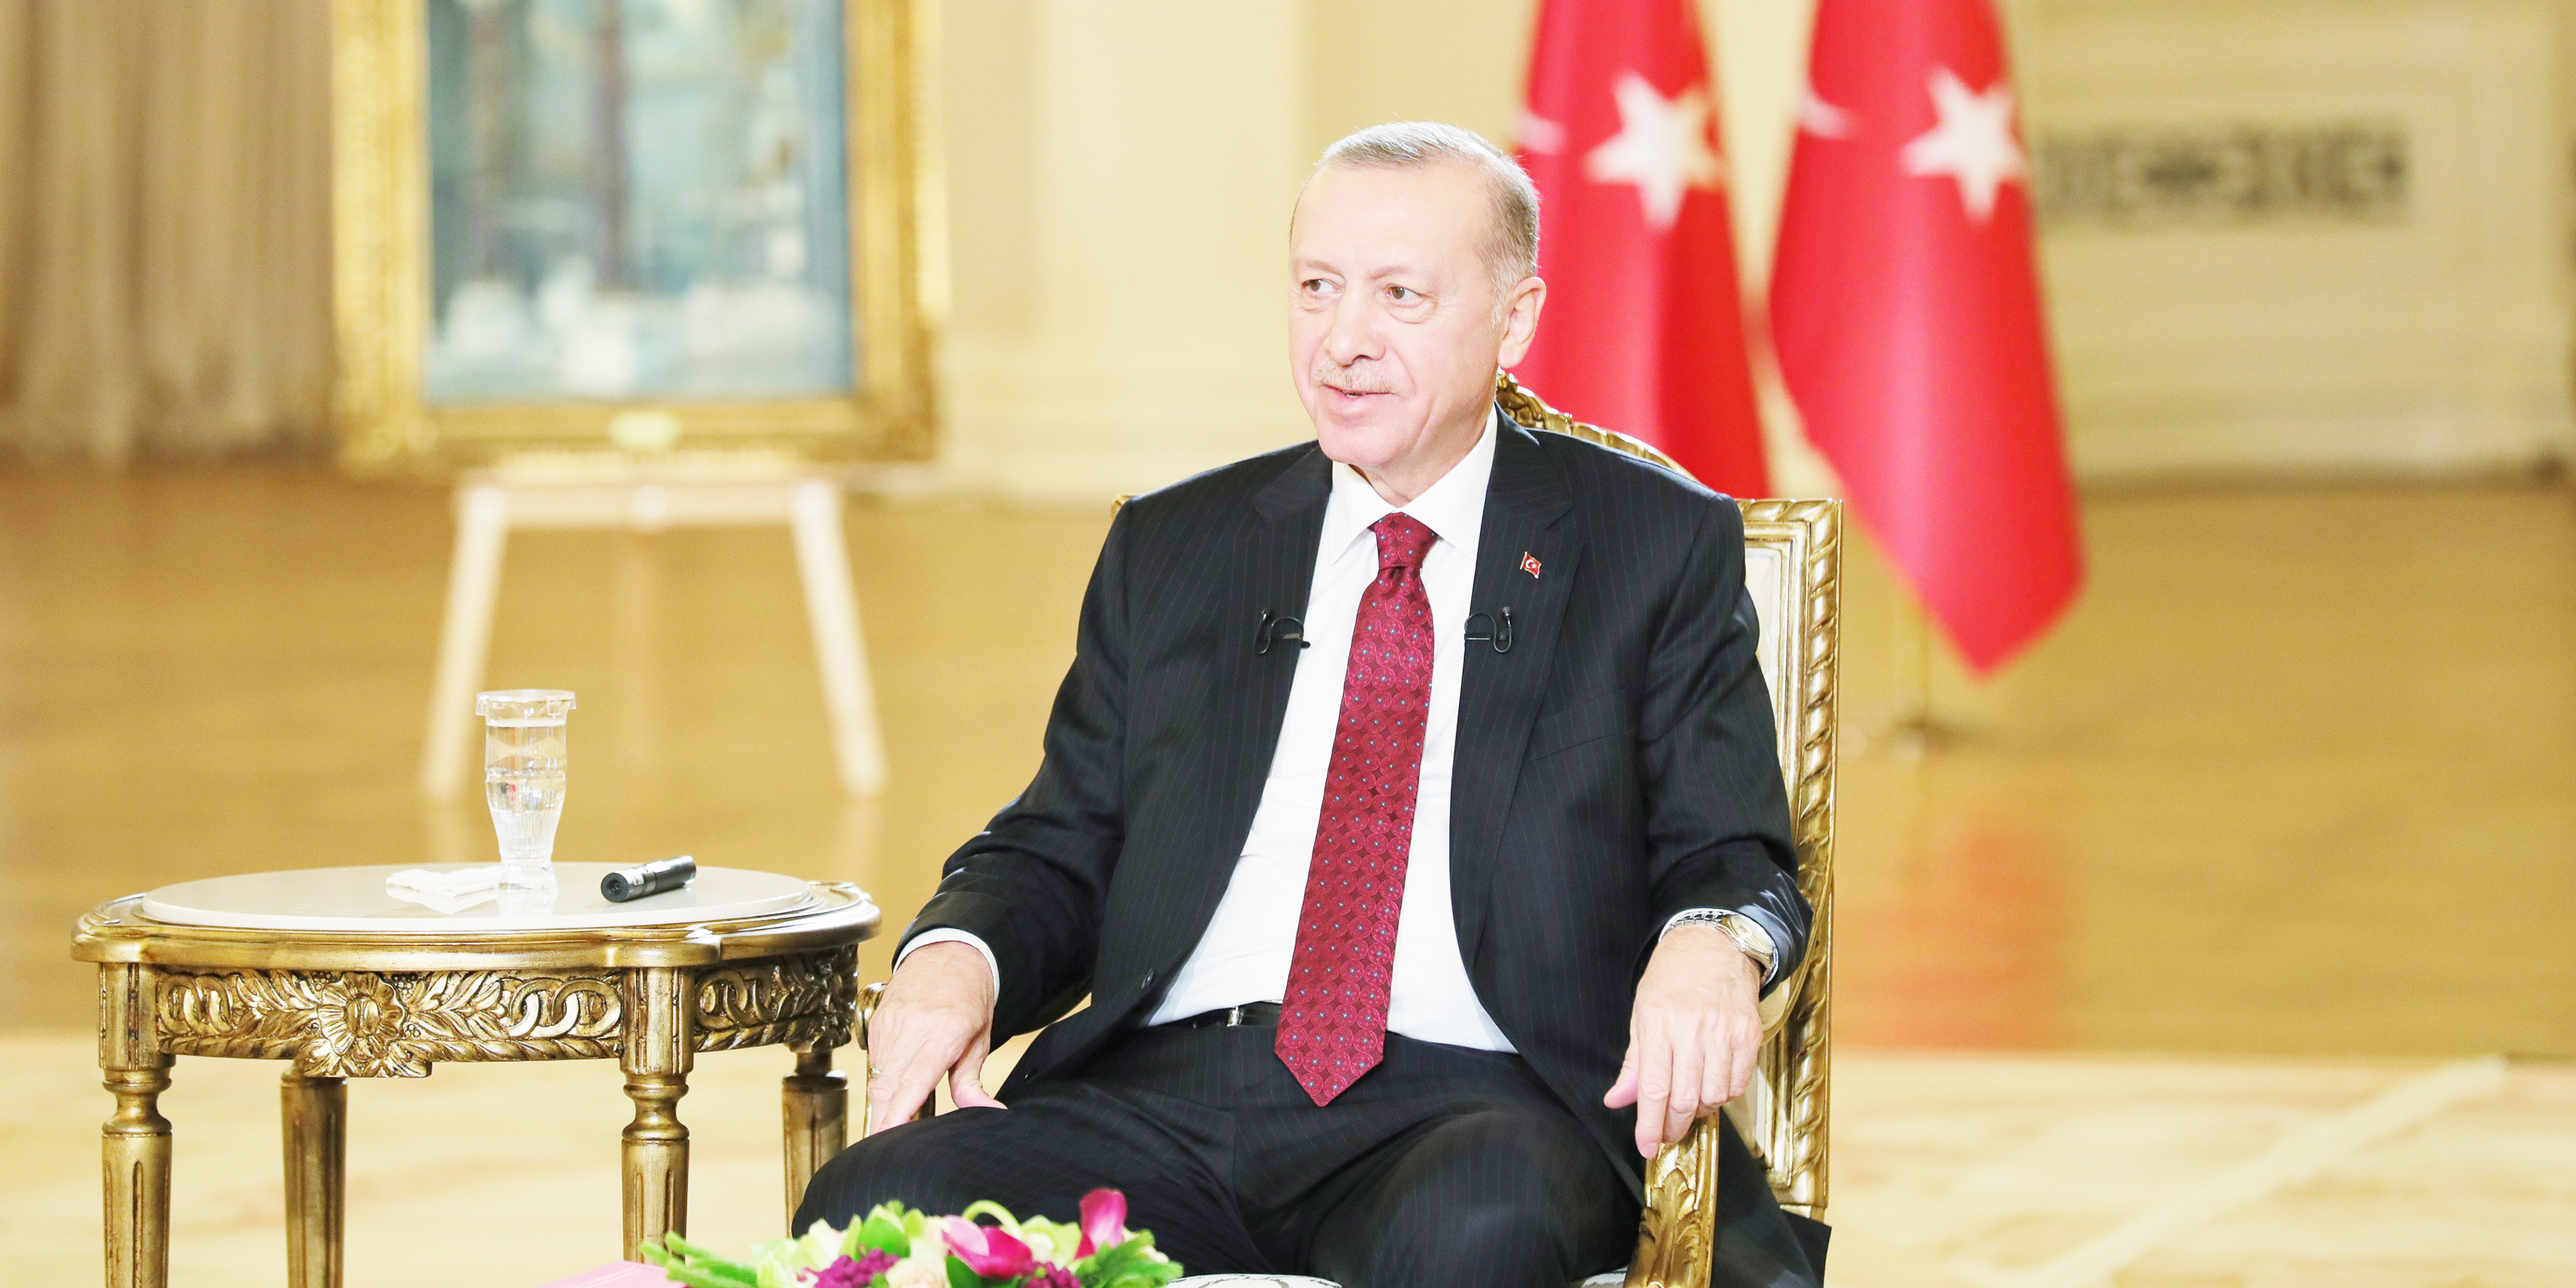 Cumhurbaşkanı Erdoğan: “Projeleri engelliyor iddiası yalandır”